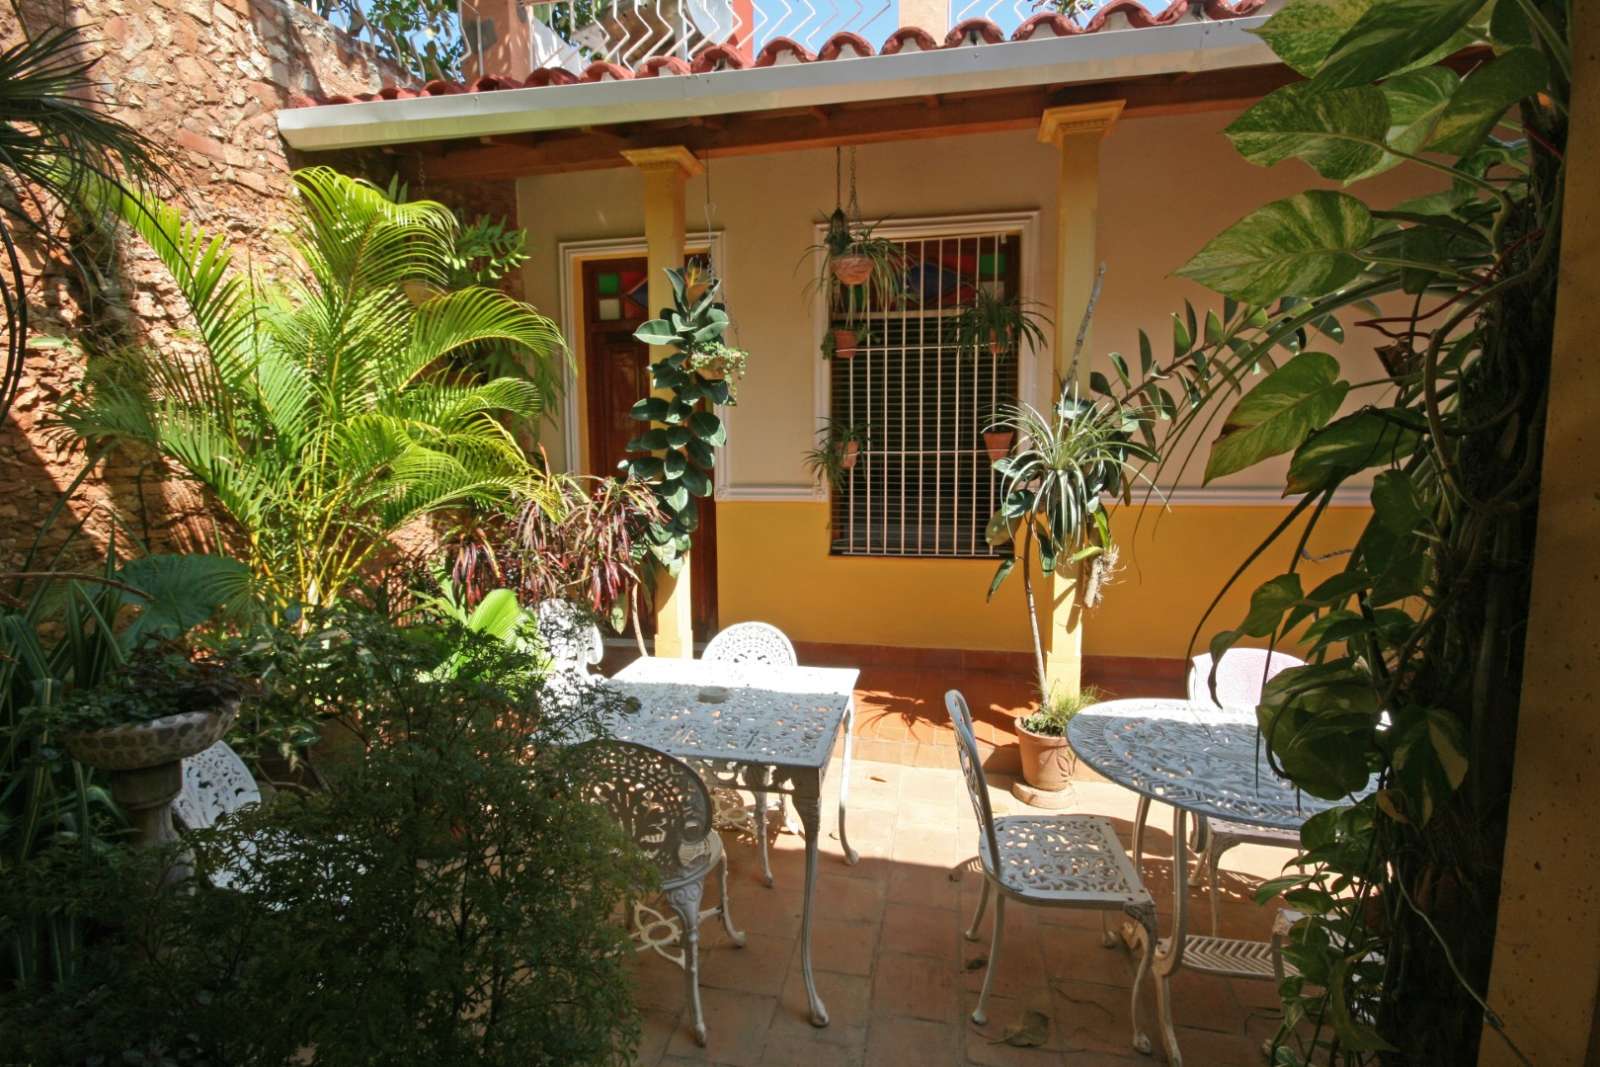 Casa Bury y Nesti in Trinidad, Cuba